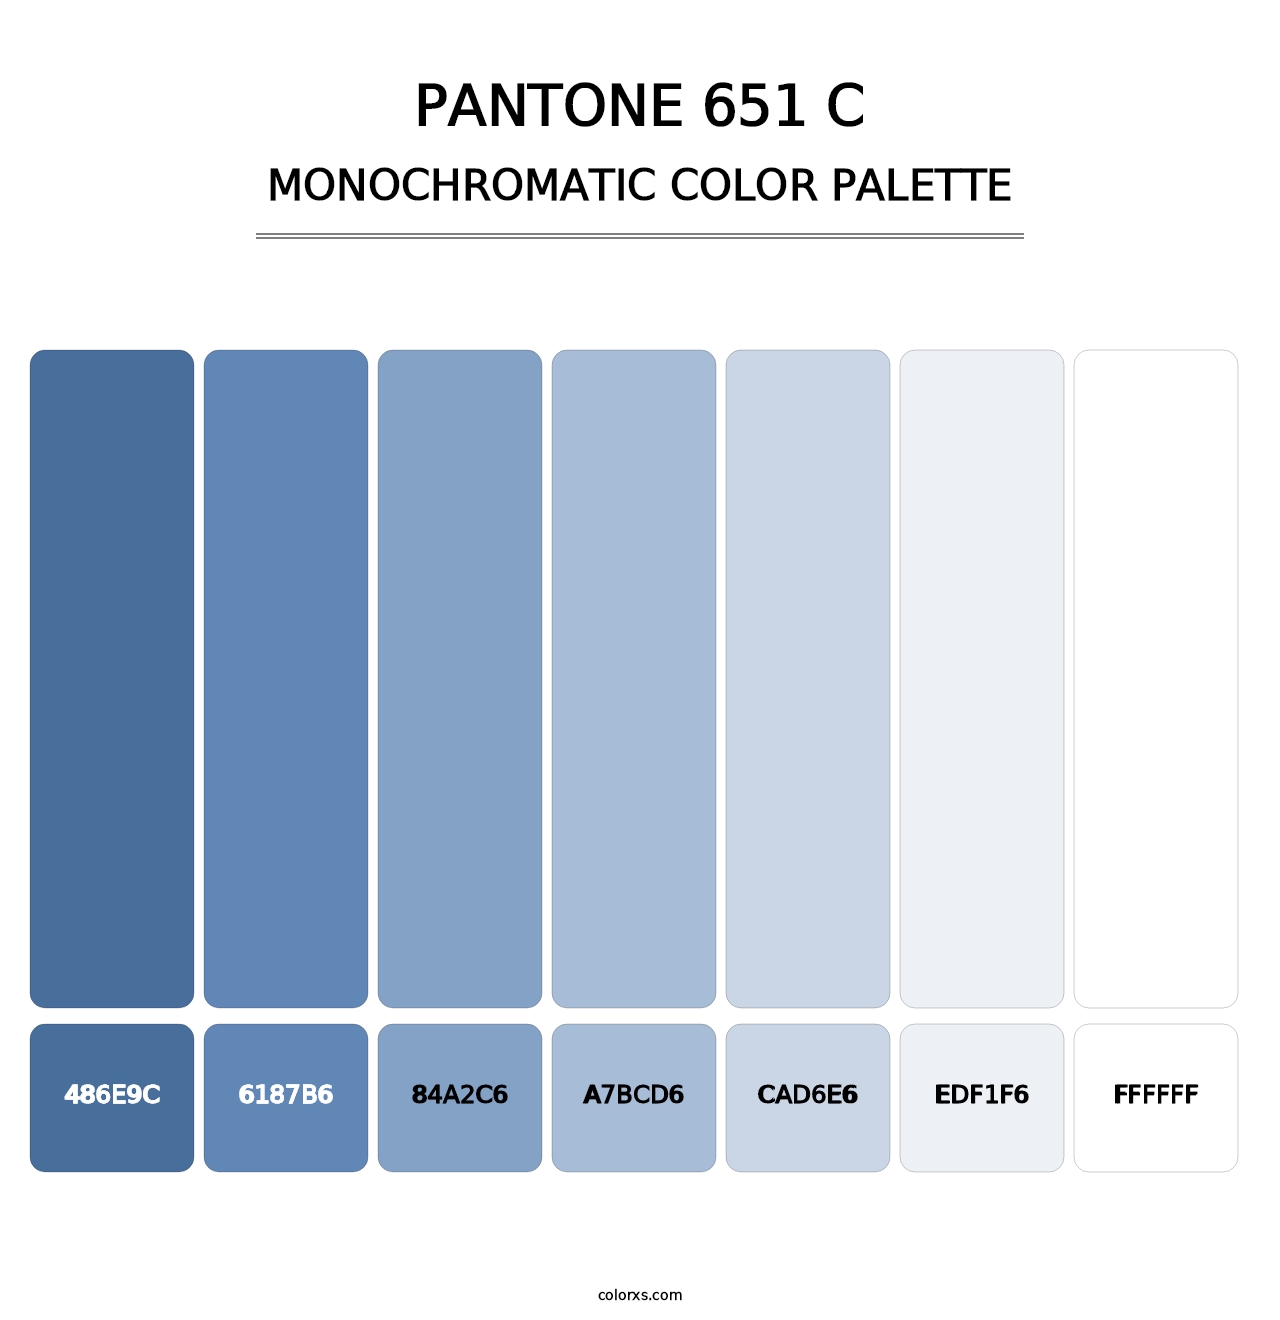 PANTONE 651 C - Monochromatic Color Palette